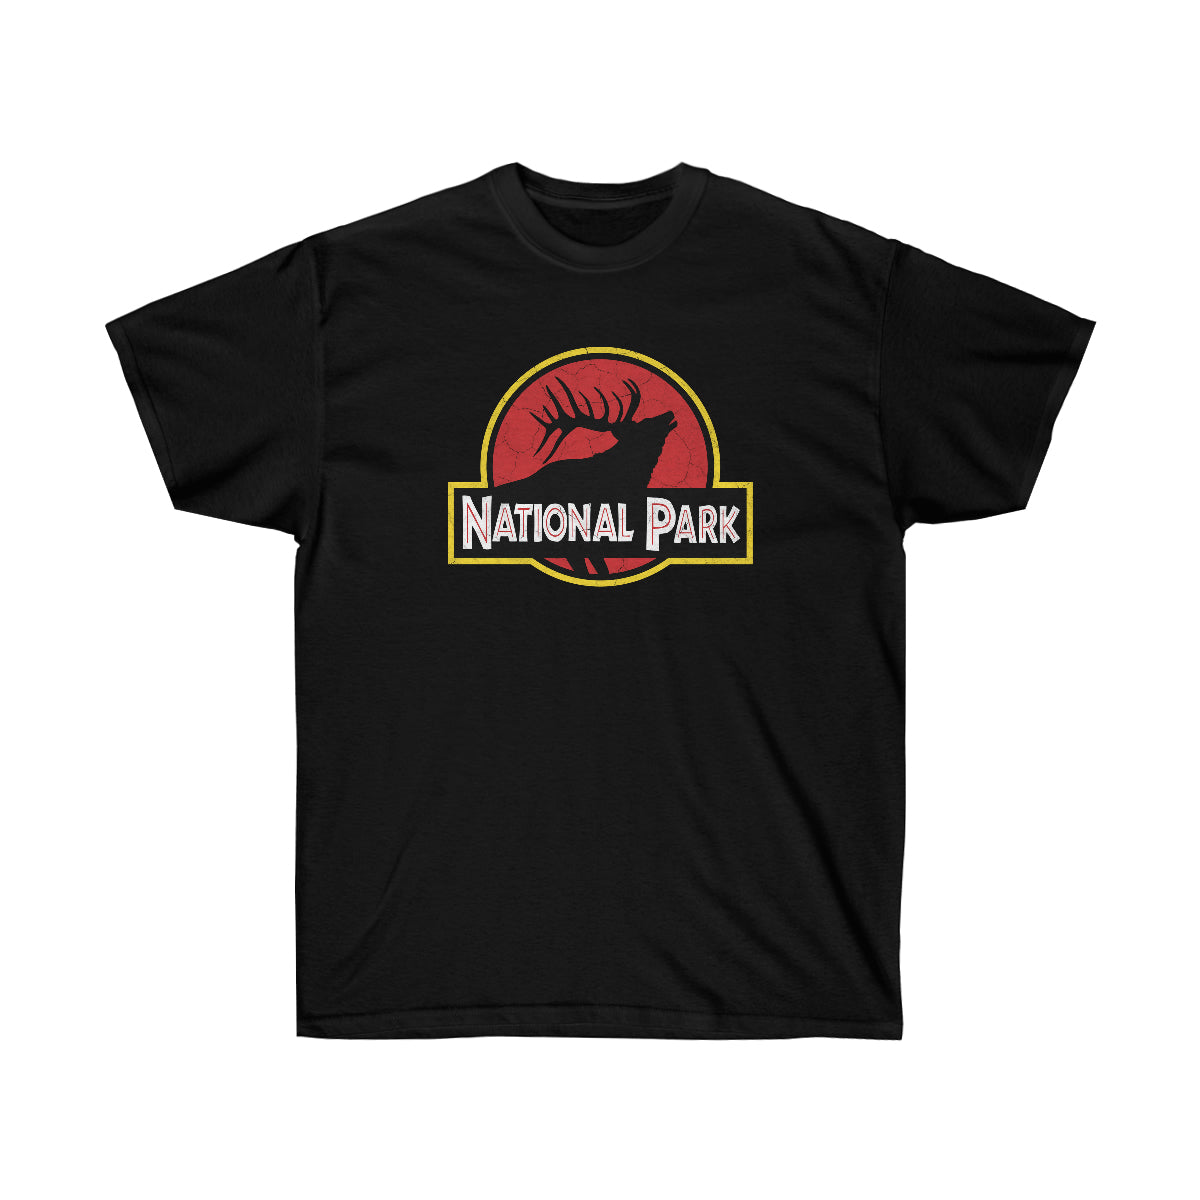 Elk National Park T-Shirt - Parody Logo